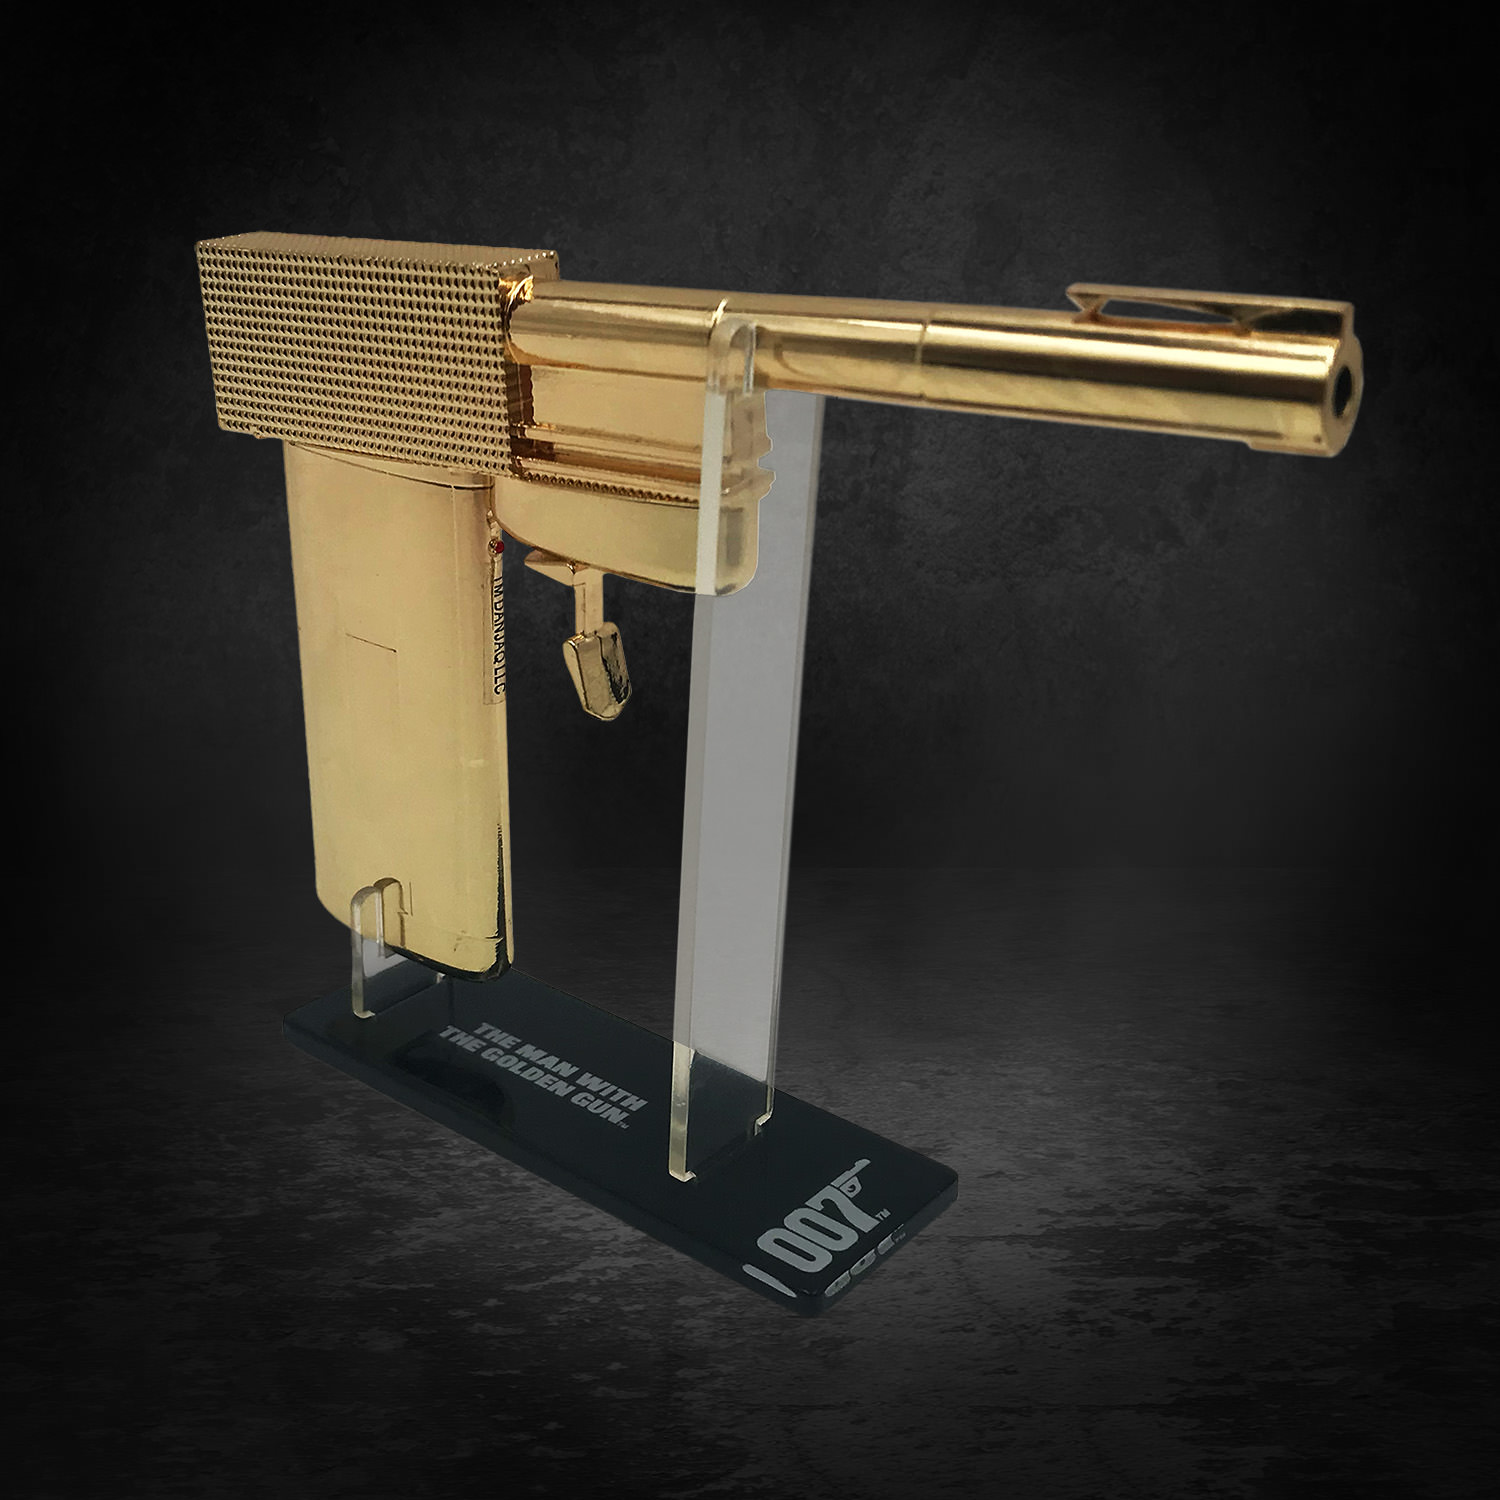 Golden Gun- Prototype Shown